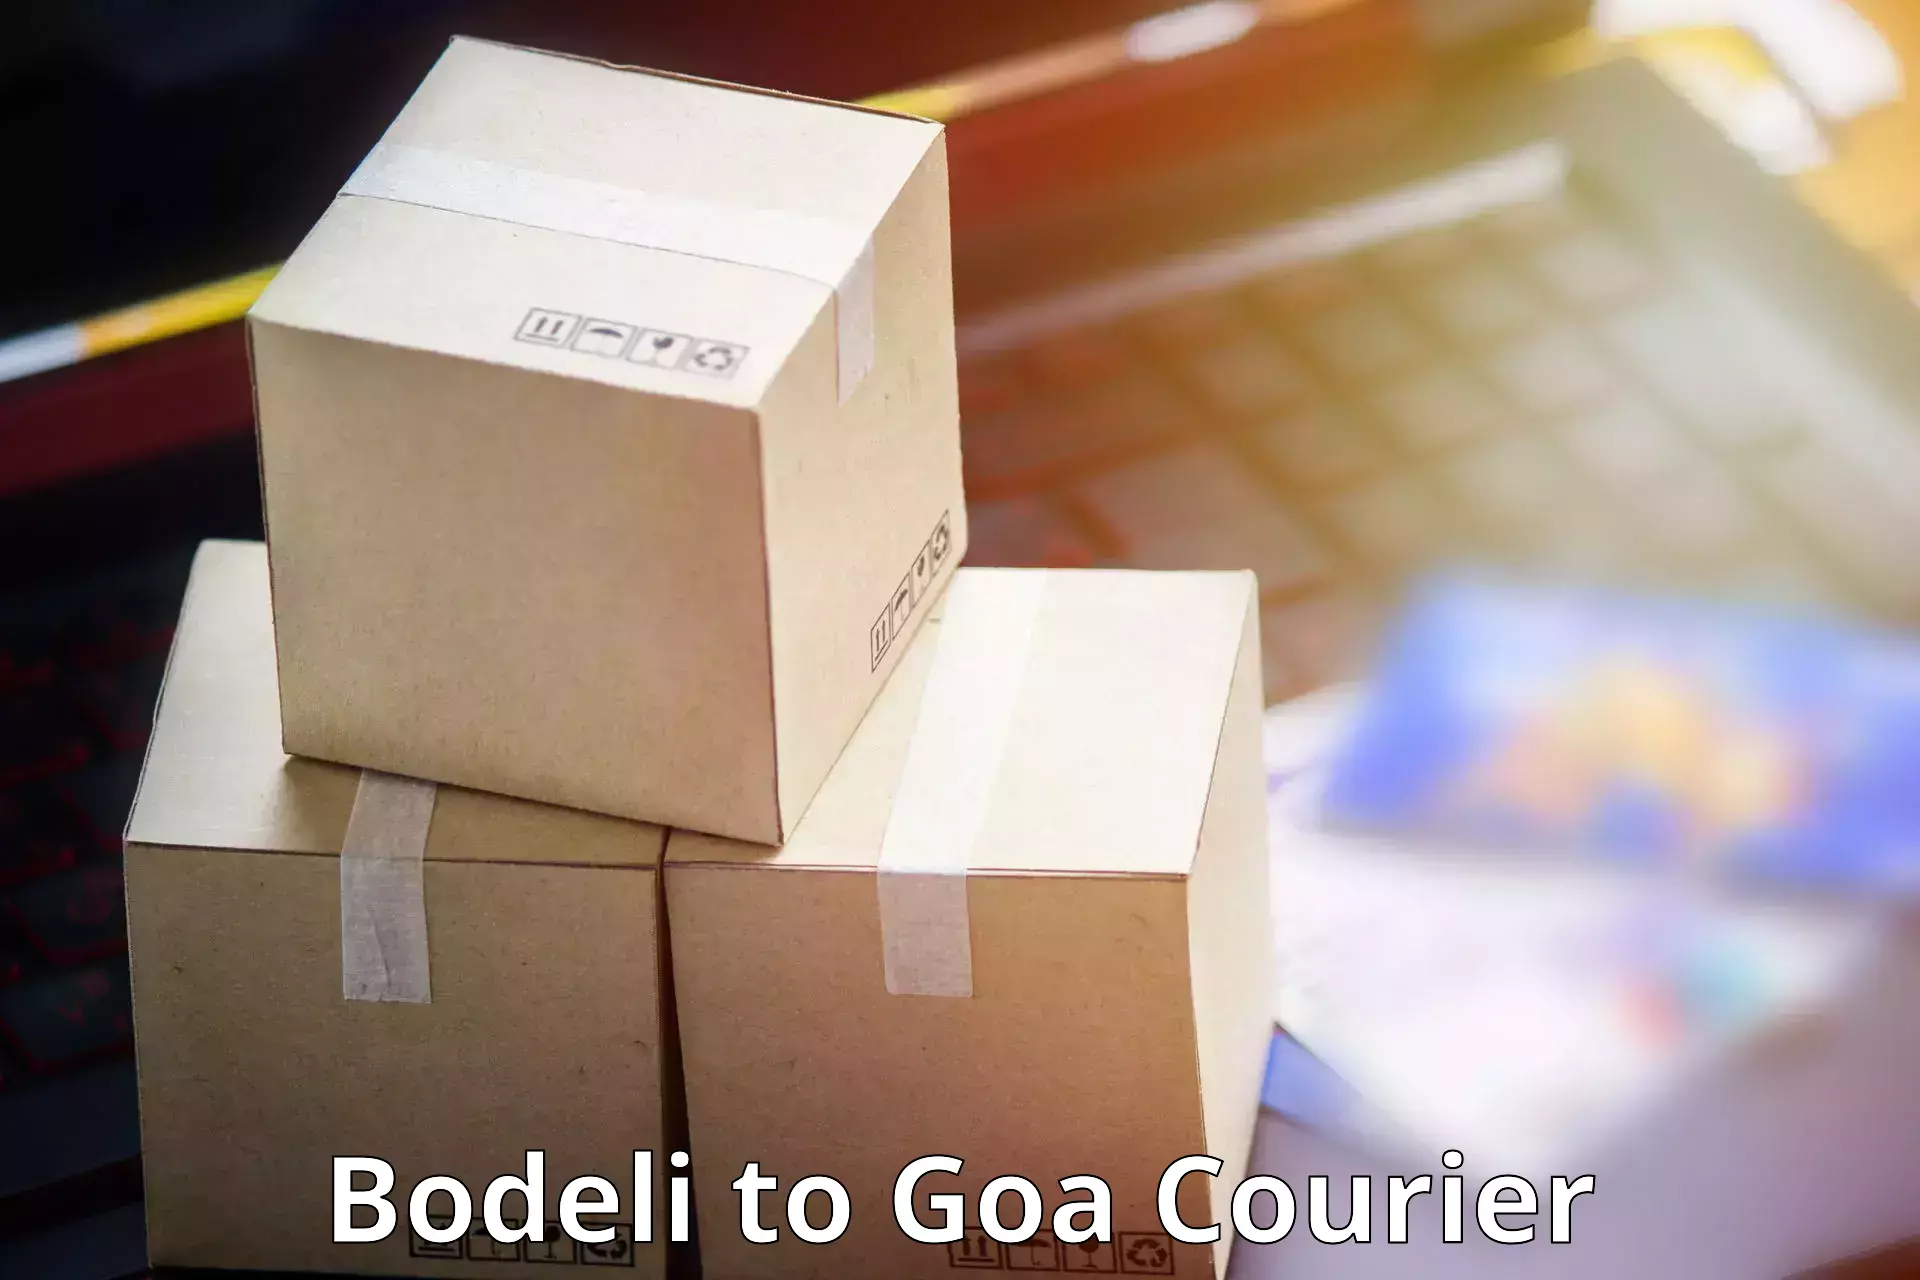 Courier insurance Bodeli to Goa